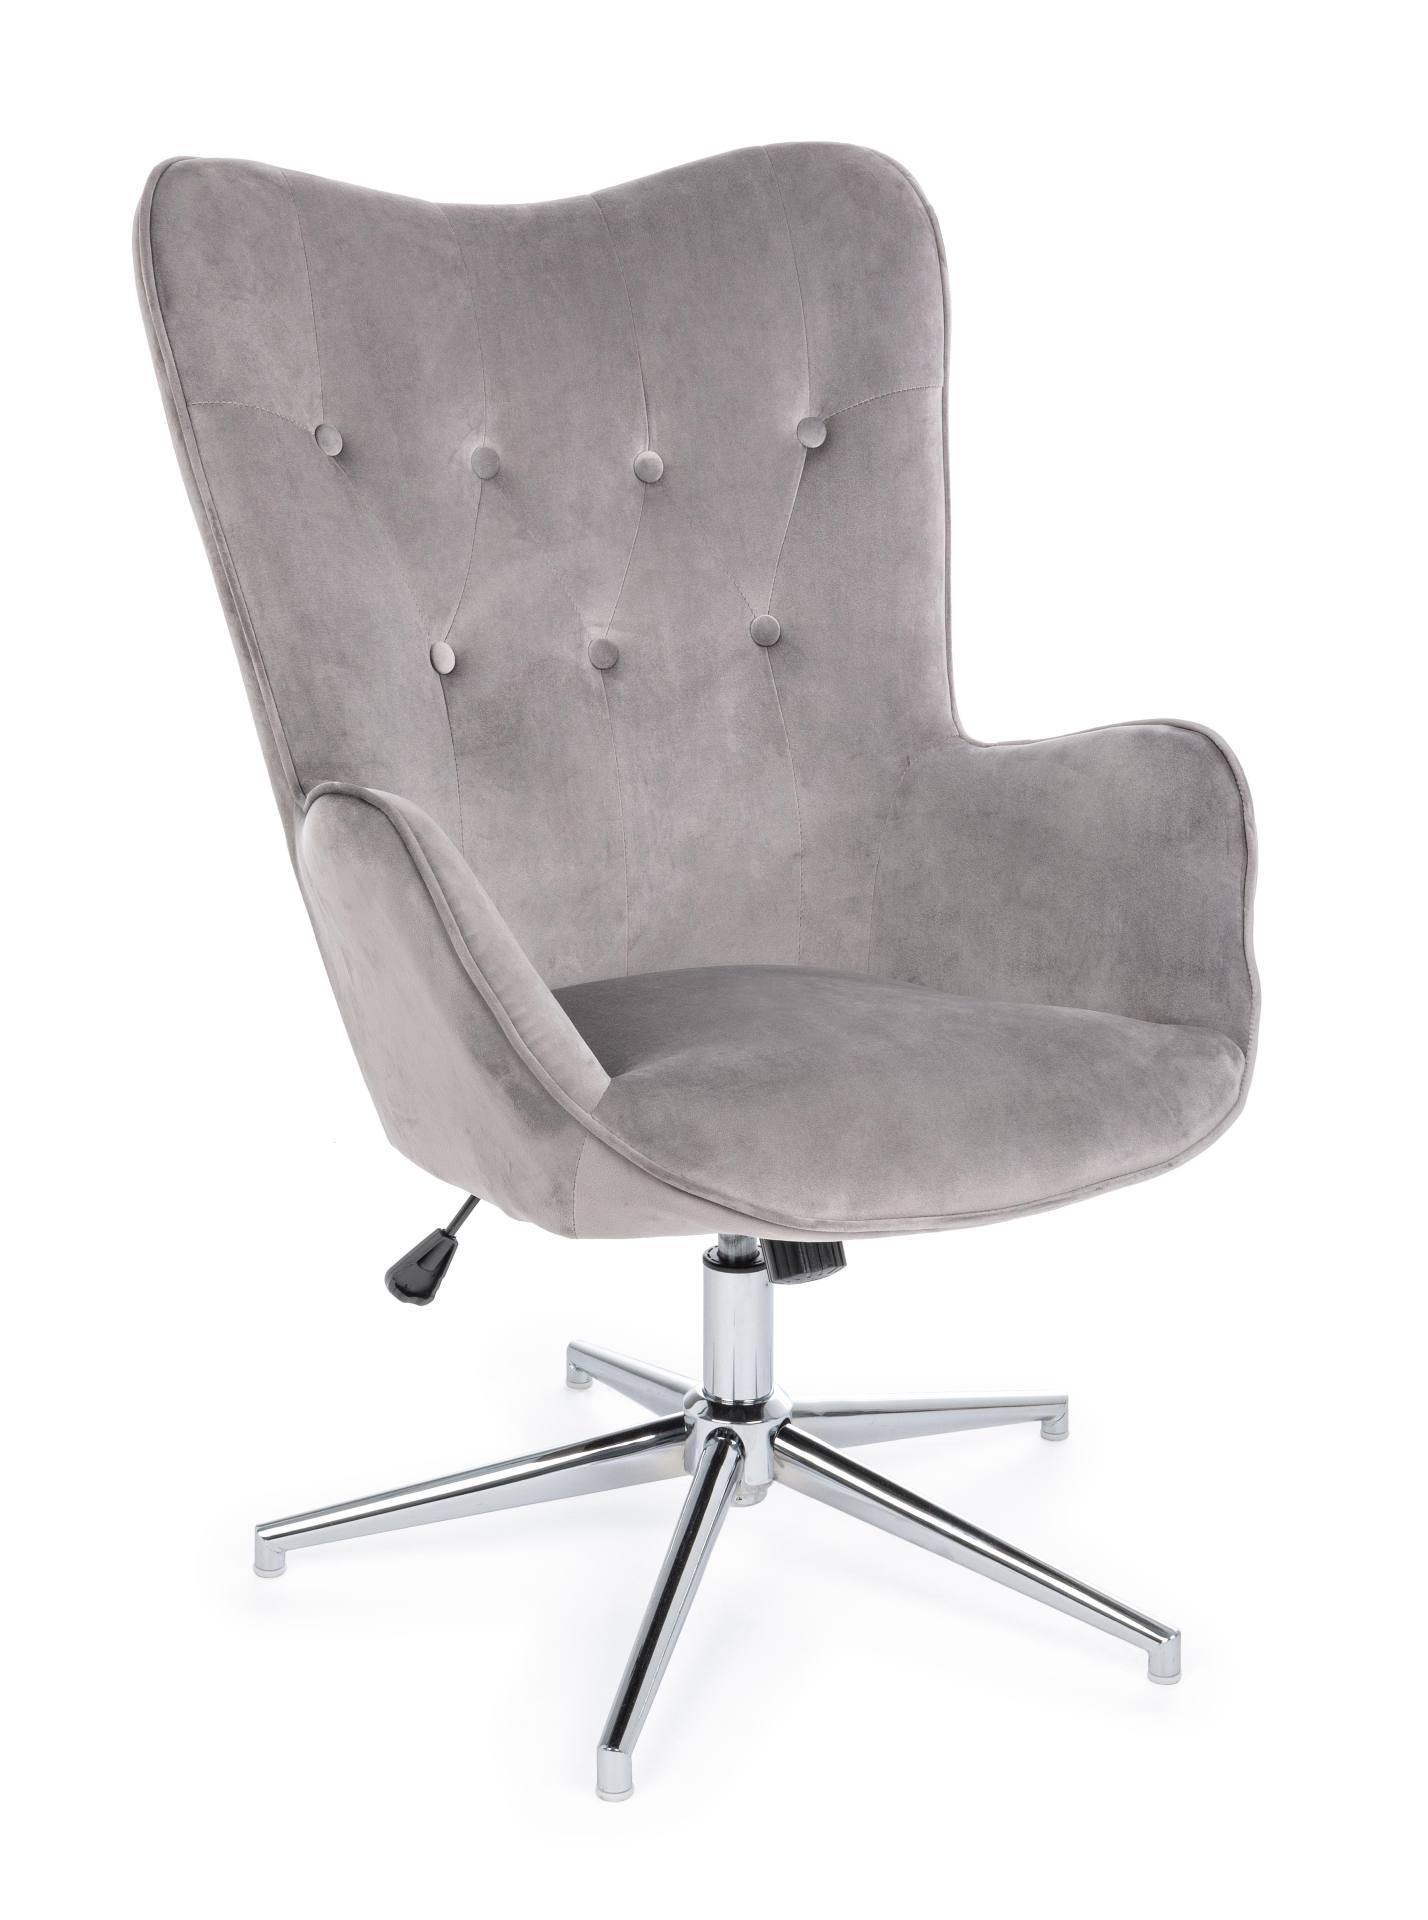 Der Sessel Farida überzeugt mit seinem modernen Design. Gefertigt wurde er aus Samt, welcher einen grauen Farbton besitzt. Das Gestell ist aus Metall und hat eine silberne Farbe. Der Sessel besitzt eine Sitzhöhe von 45 cm. Die Breite beträgt 69 cm. Der Se